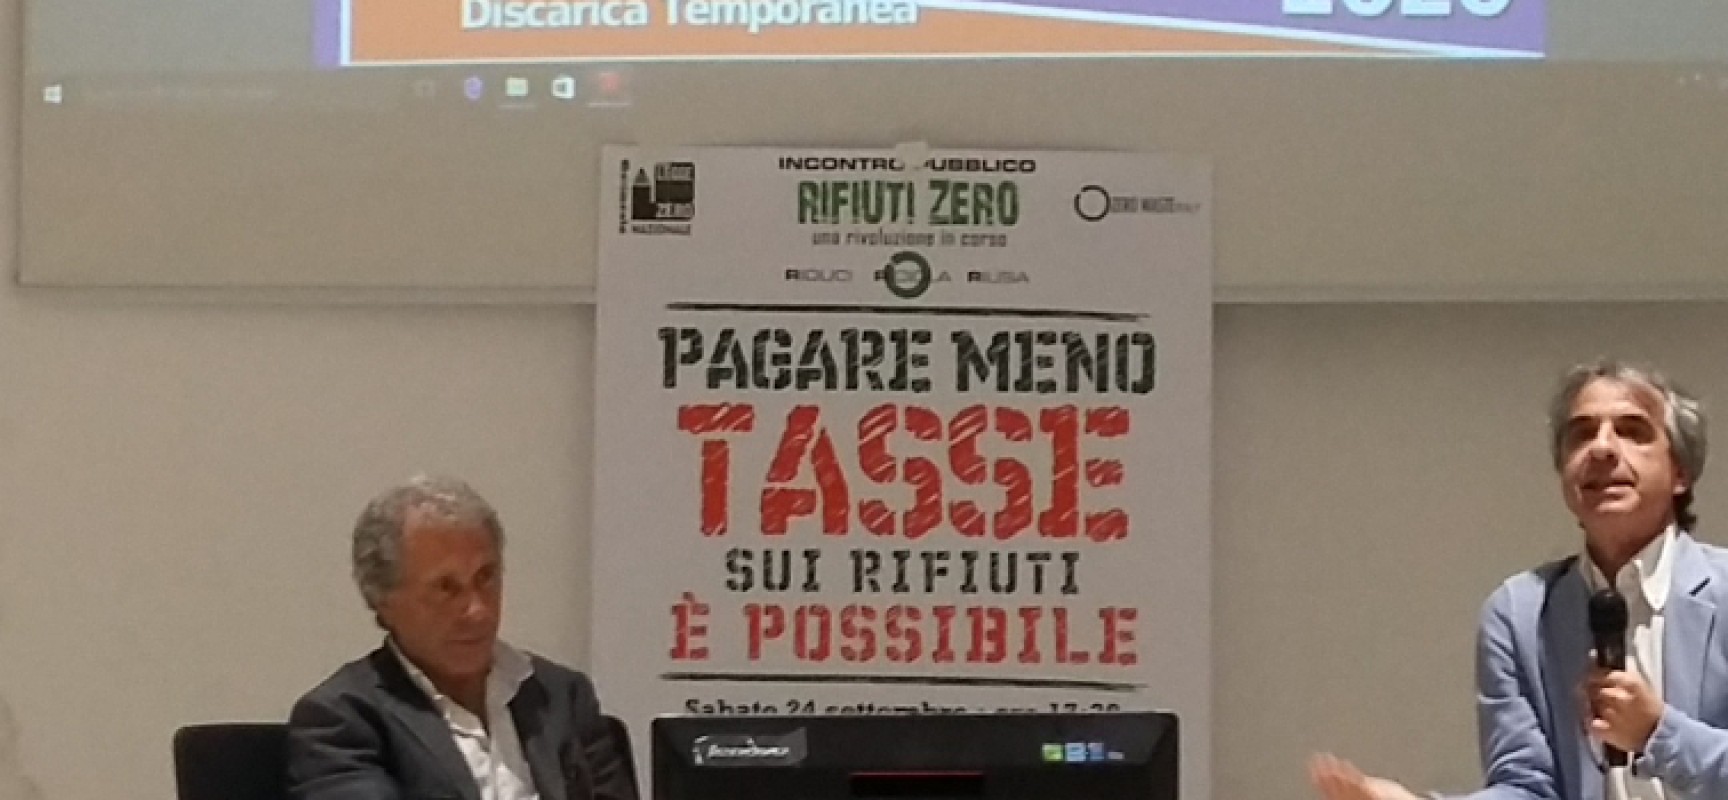 “Rifiuti zero” a Bisceglie, Rossano Ercolini  parla di smaltimento e riutilizzo rifiuti / FOTO